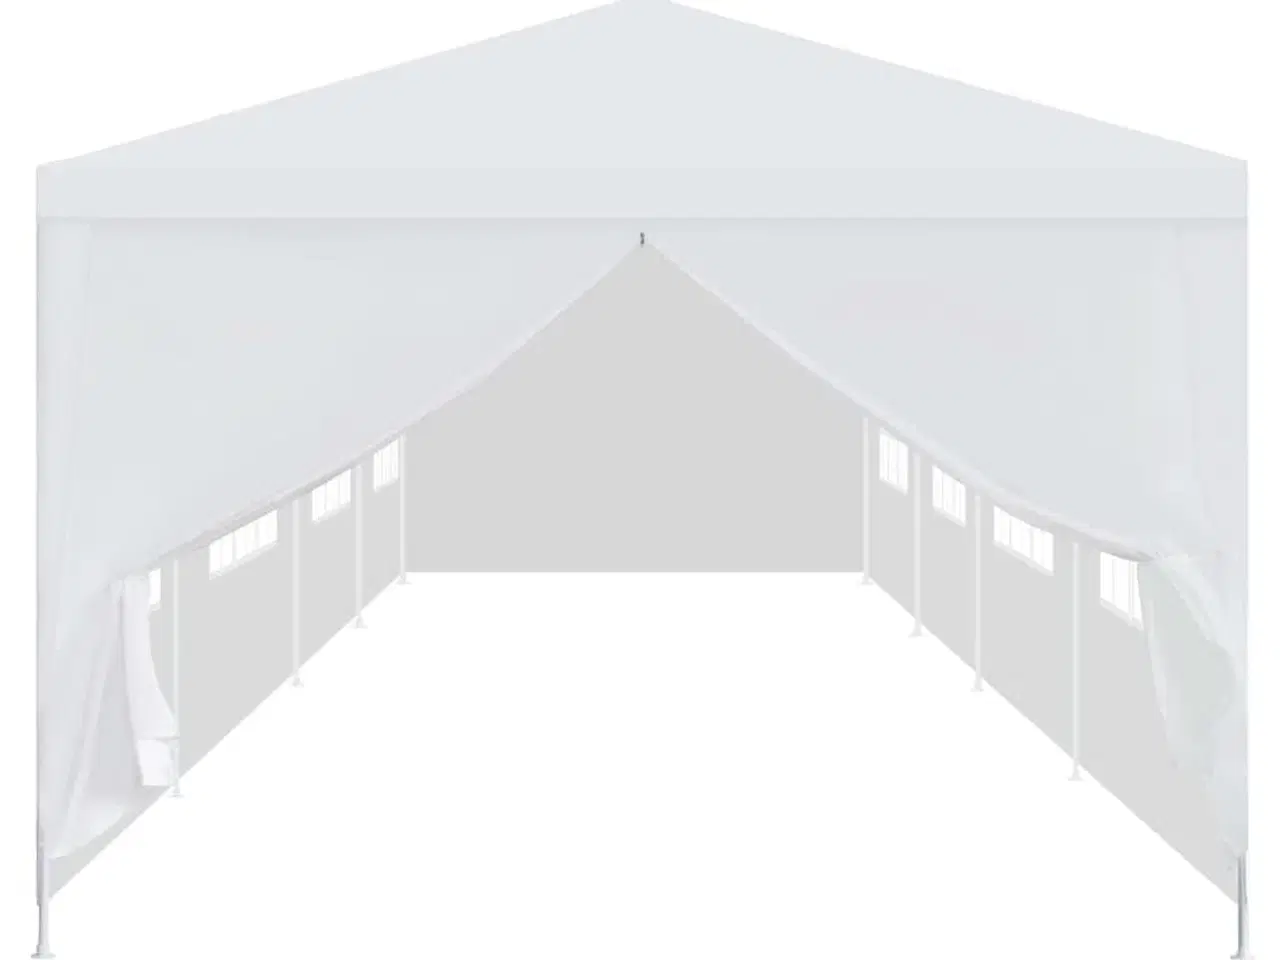 Billede 2 - Havefesttelt 3 x 12 m hvid